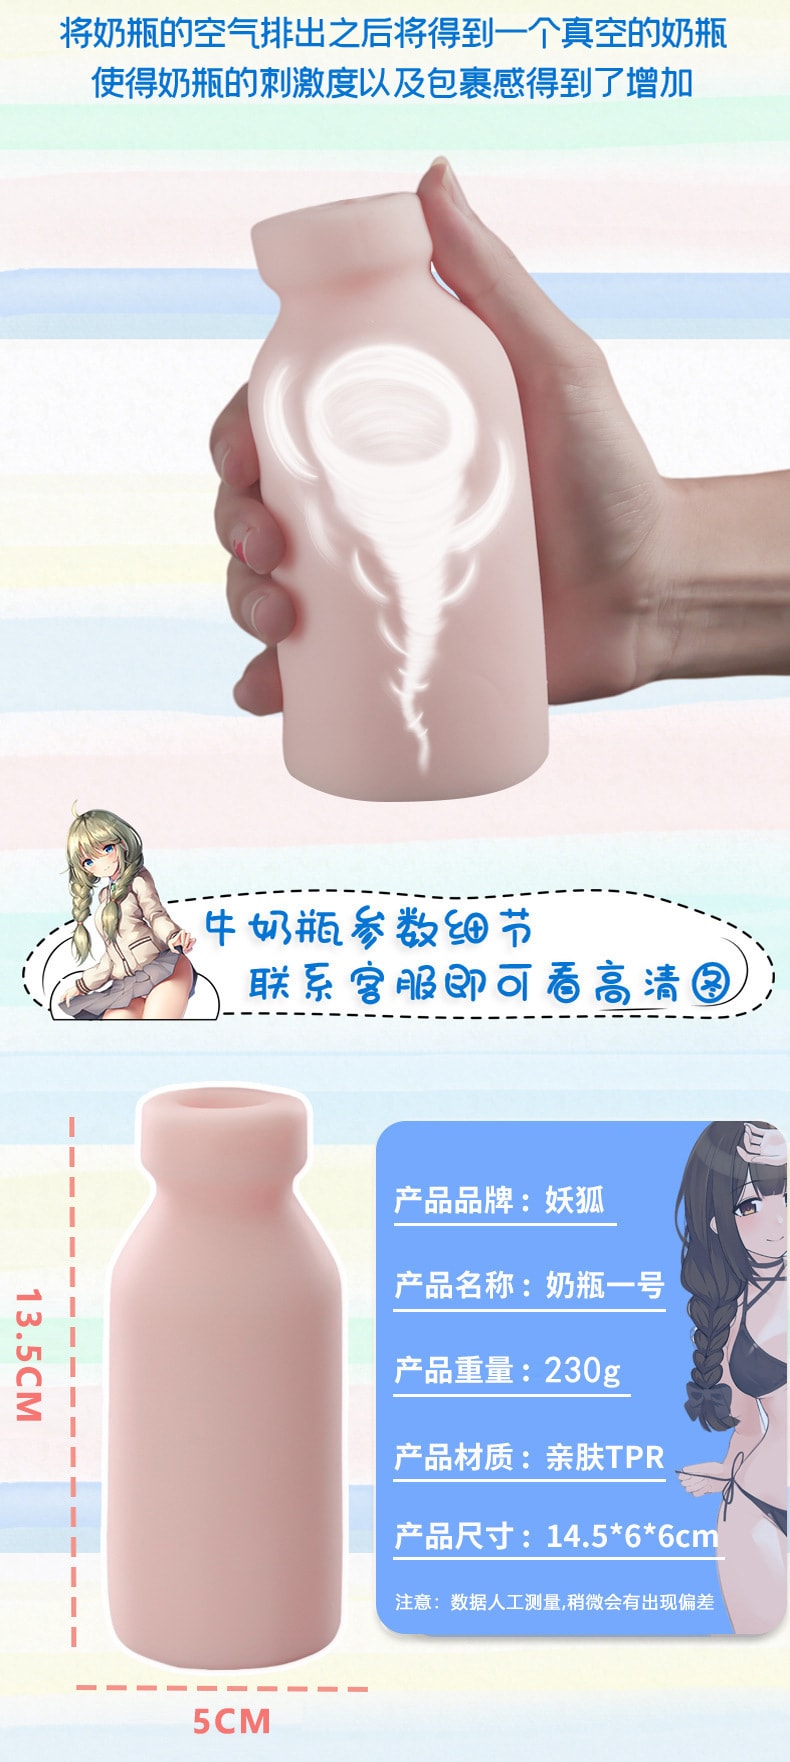 【中国直邮】Snowing love 奶瓶倒模飞机杯 奶牛女孩妹妹款【新老包装随机】